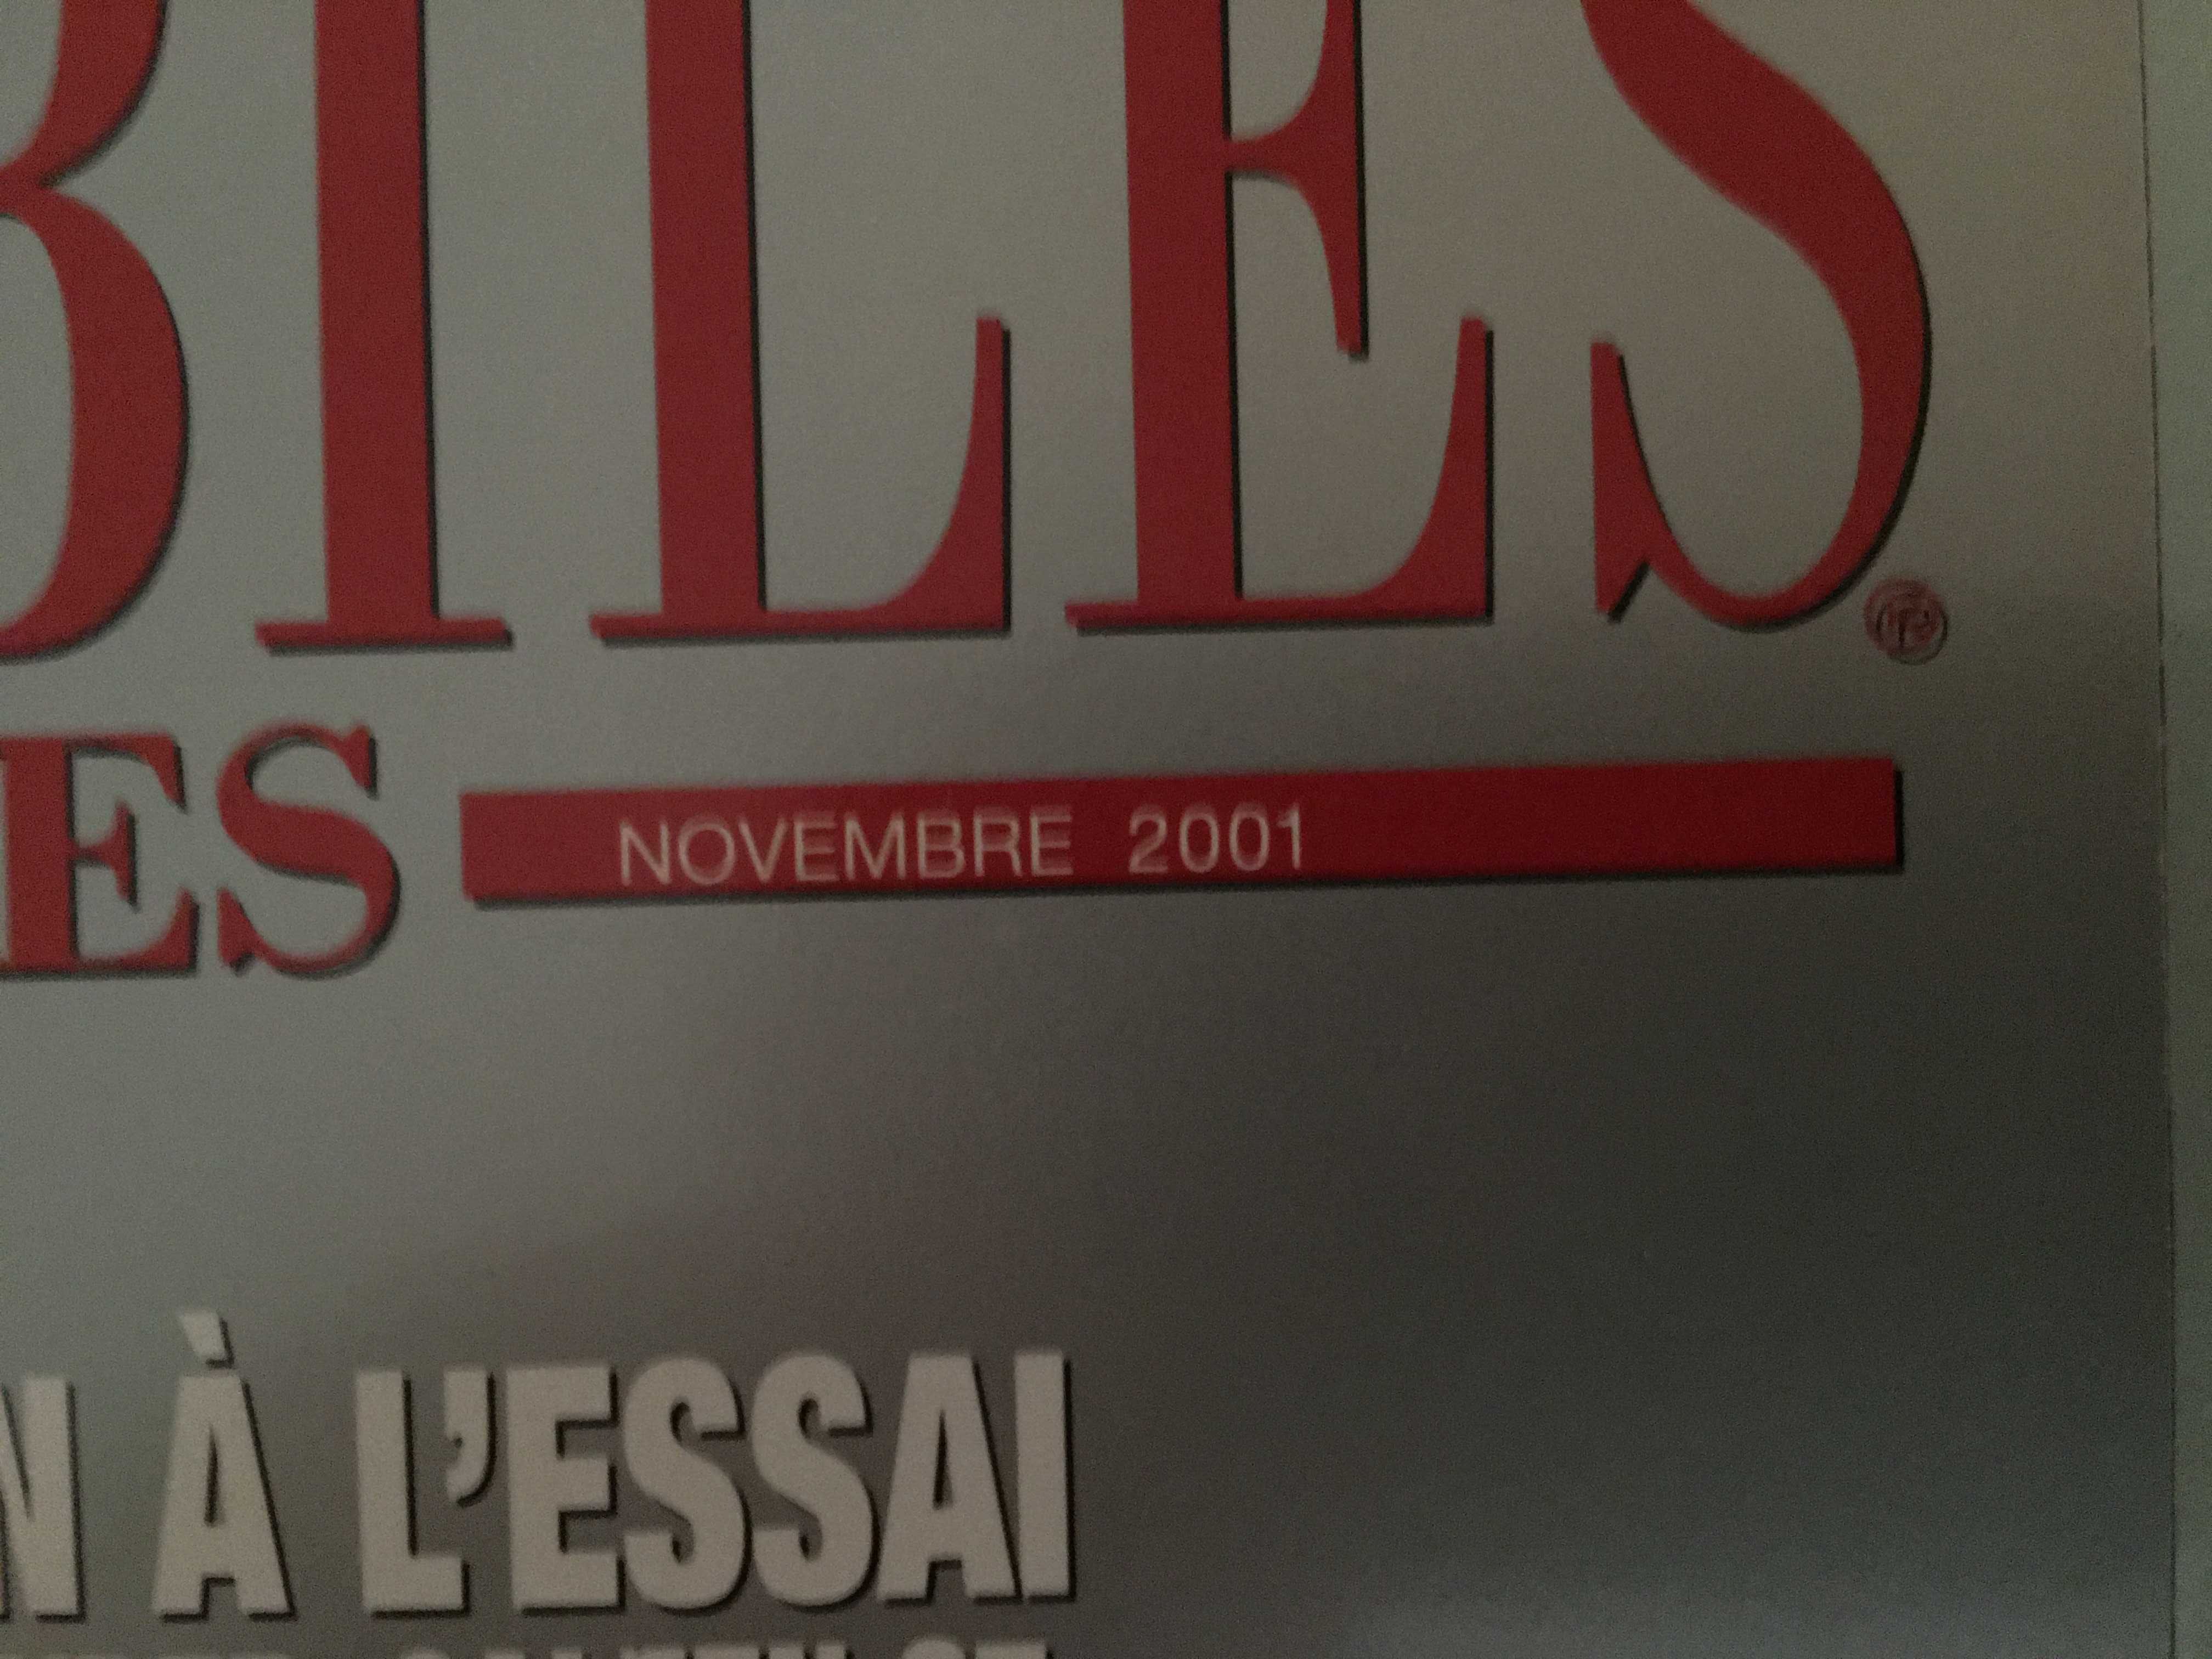 Revista Automobiles Classiques Nº118 Novembro 2001 (C/Portes)